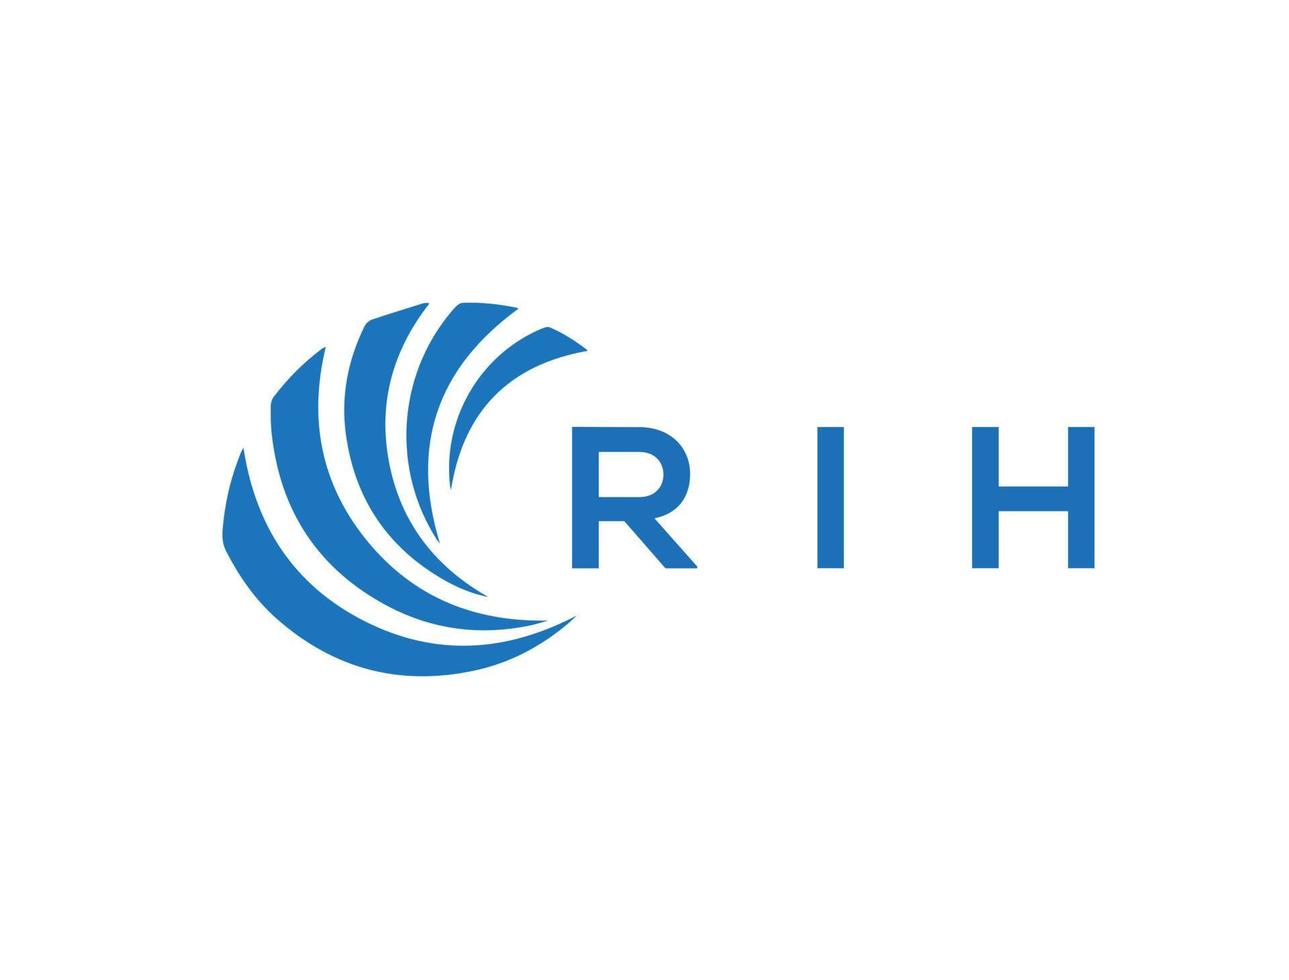 RIH letter logo design on white background. RIH creative circle letter logo concept. RIH letter design. vector